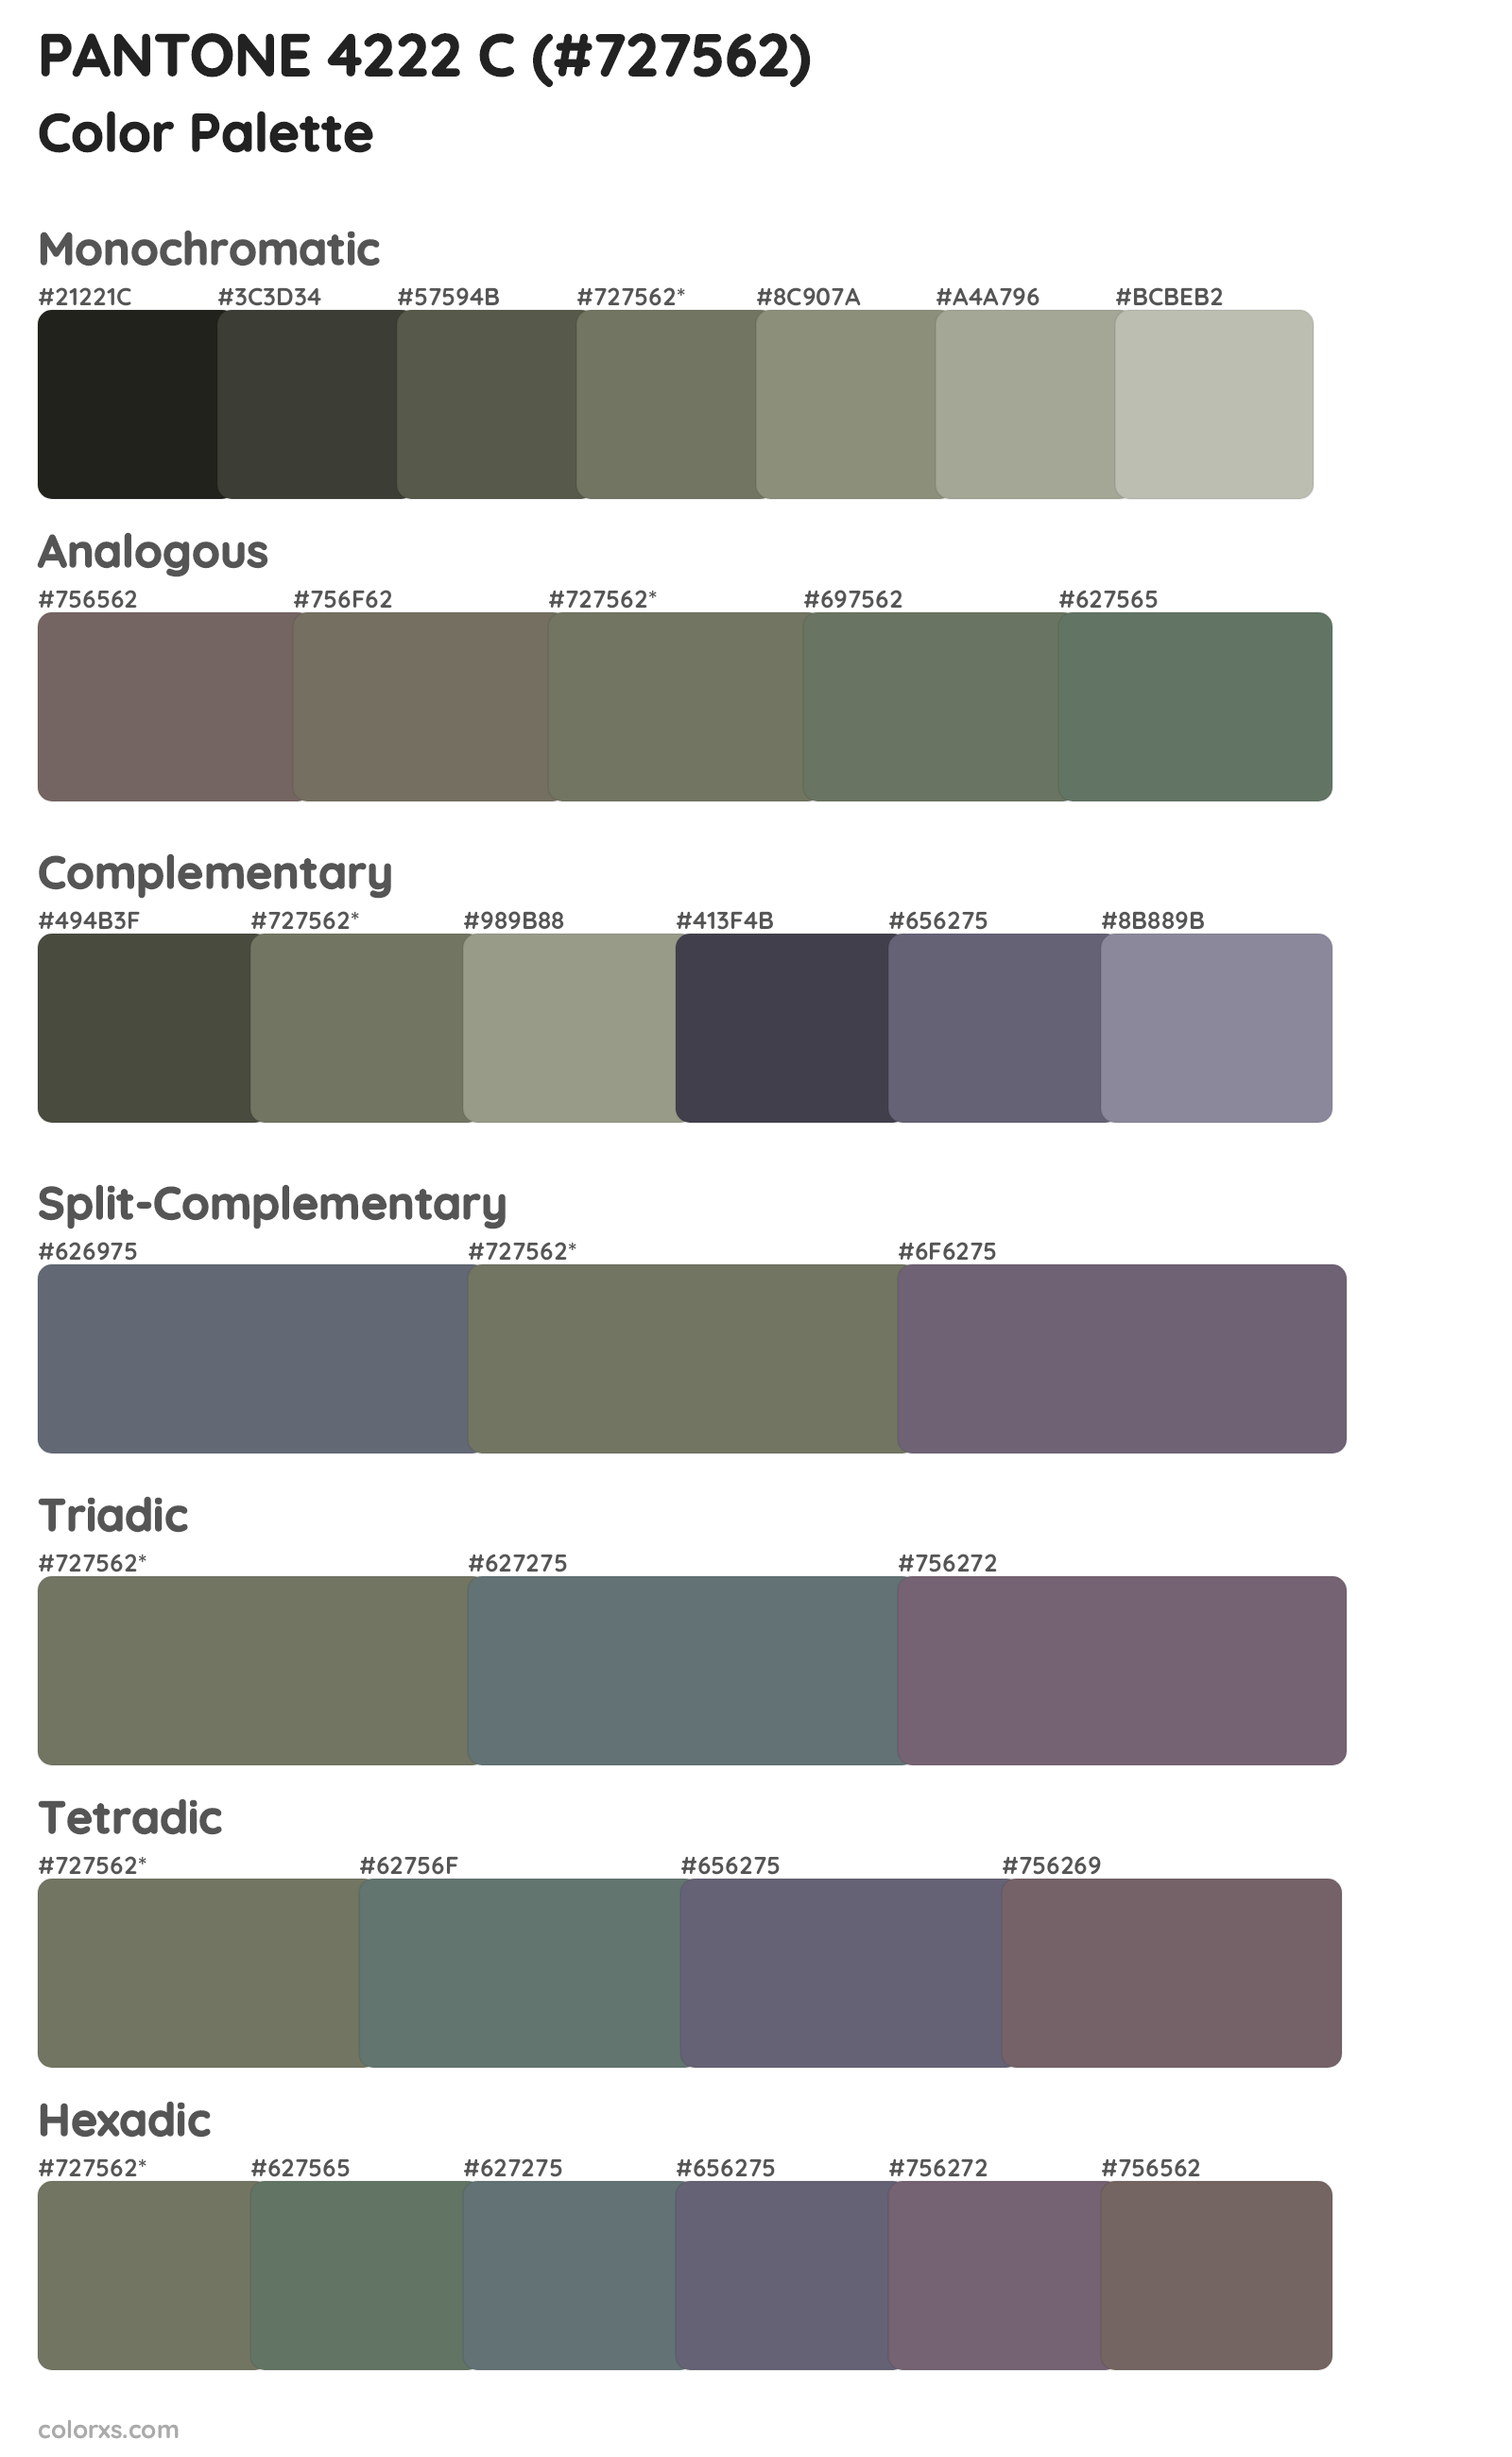 PANTONE 4222 C Color Scheme Palettes